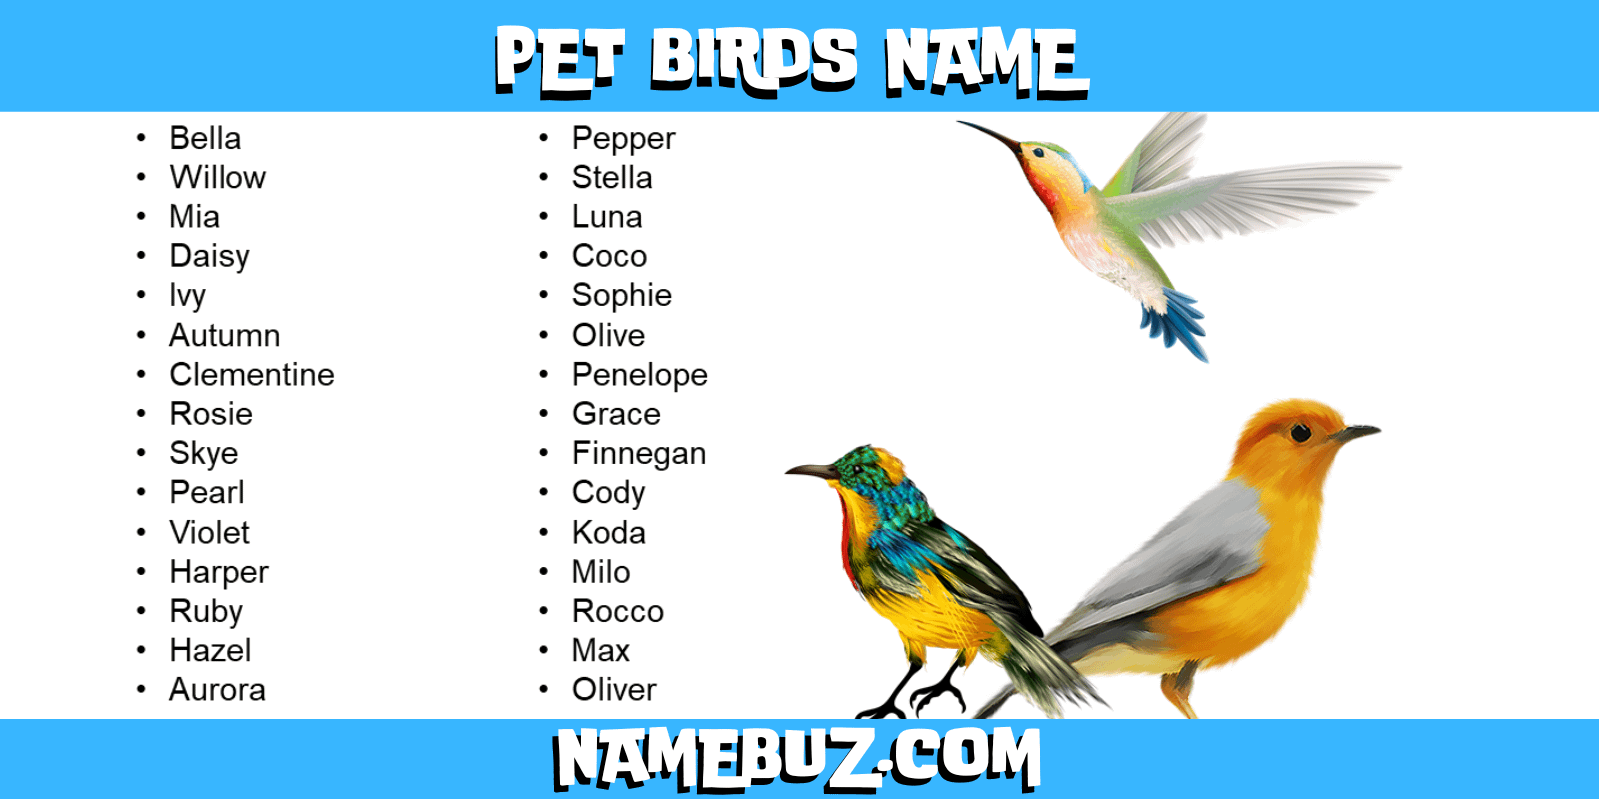 Pet birds name